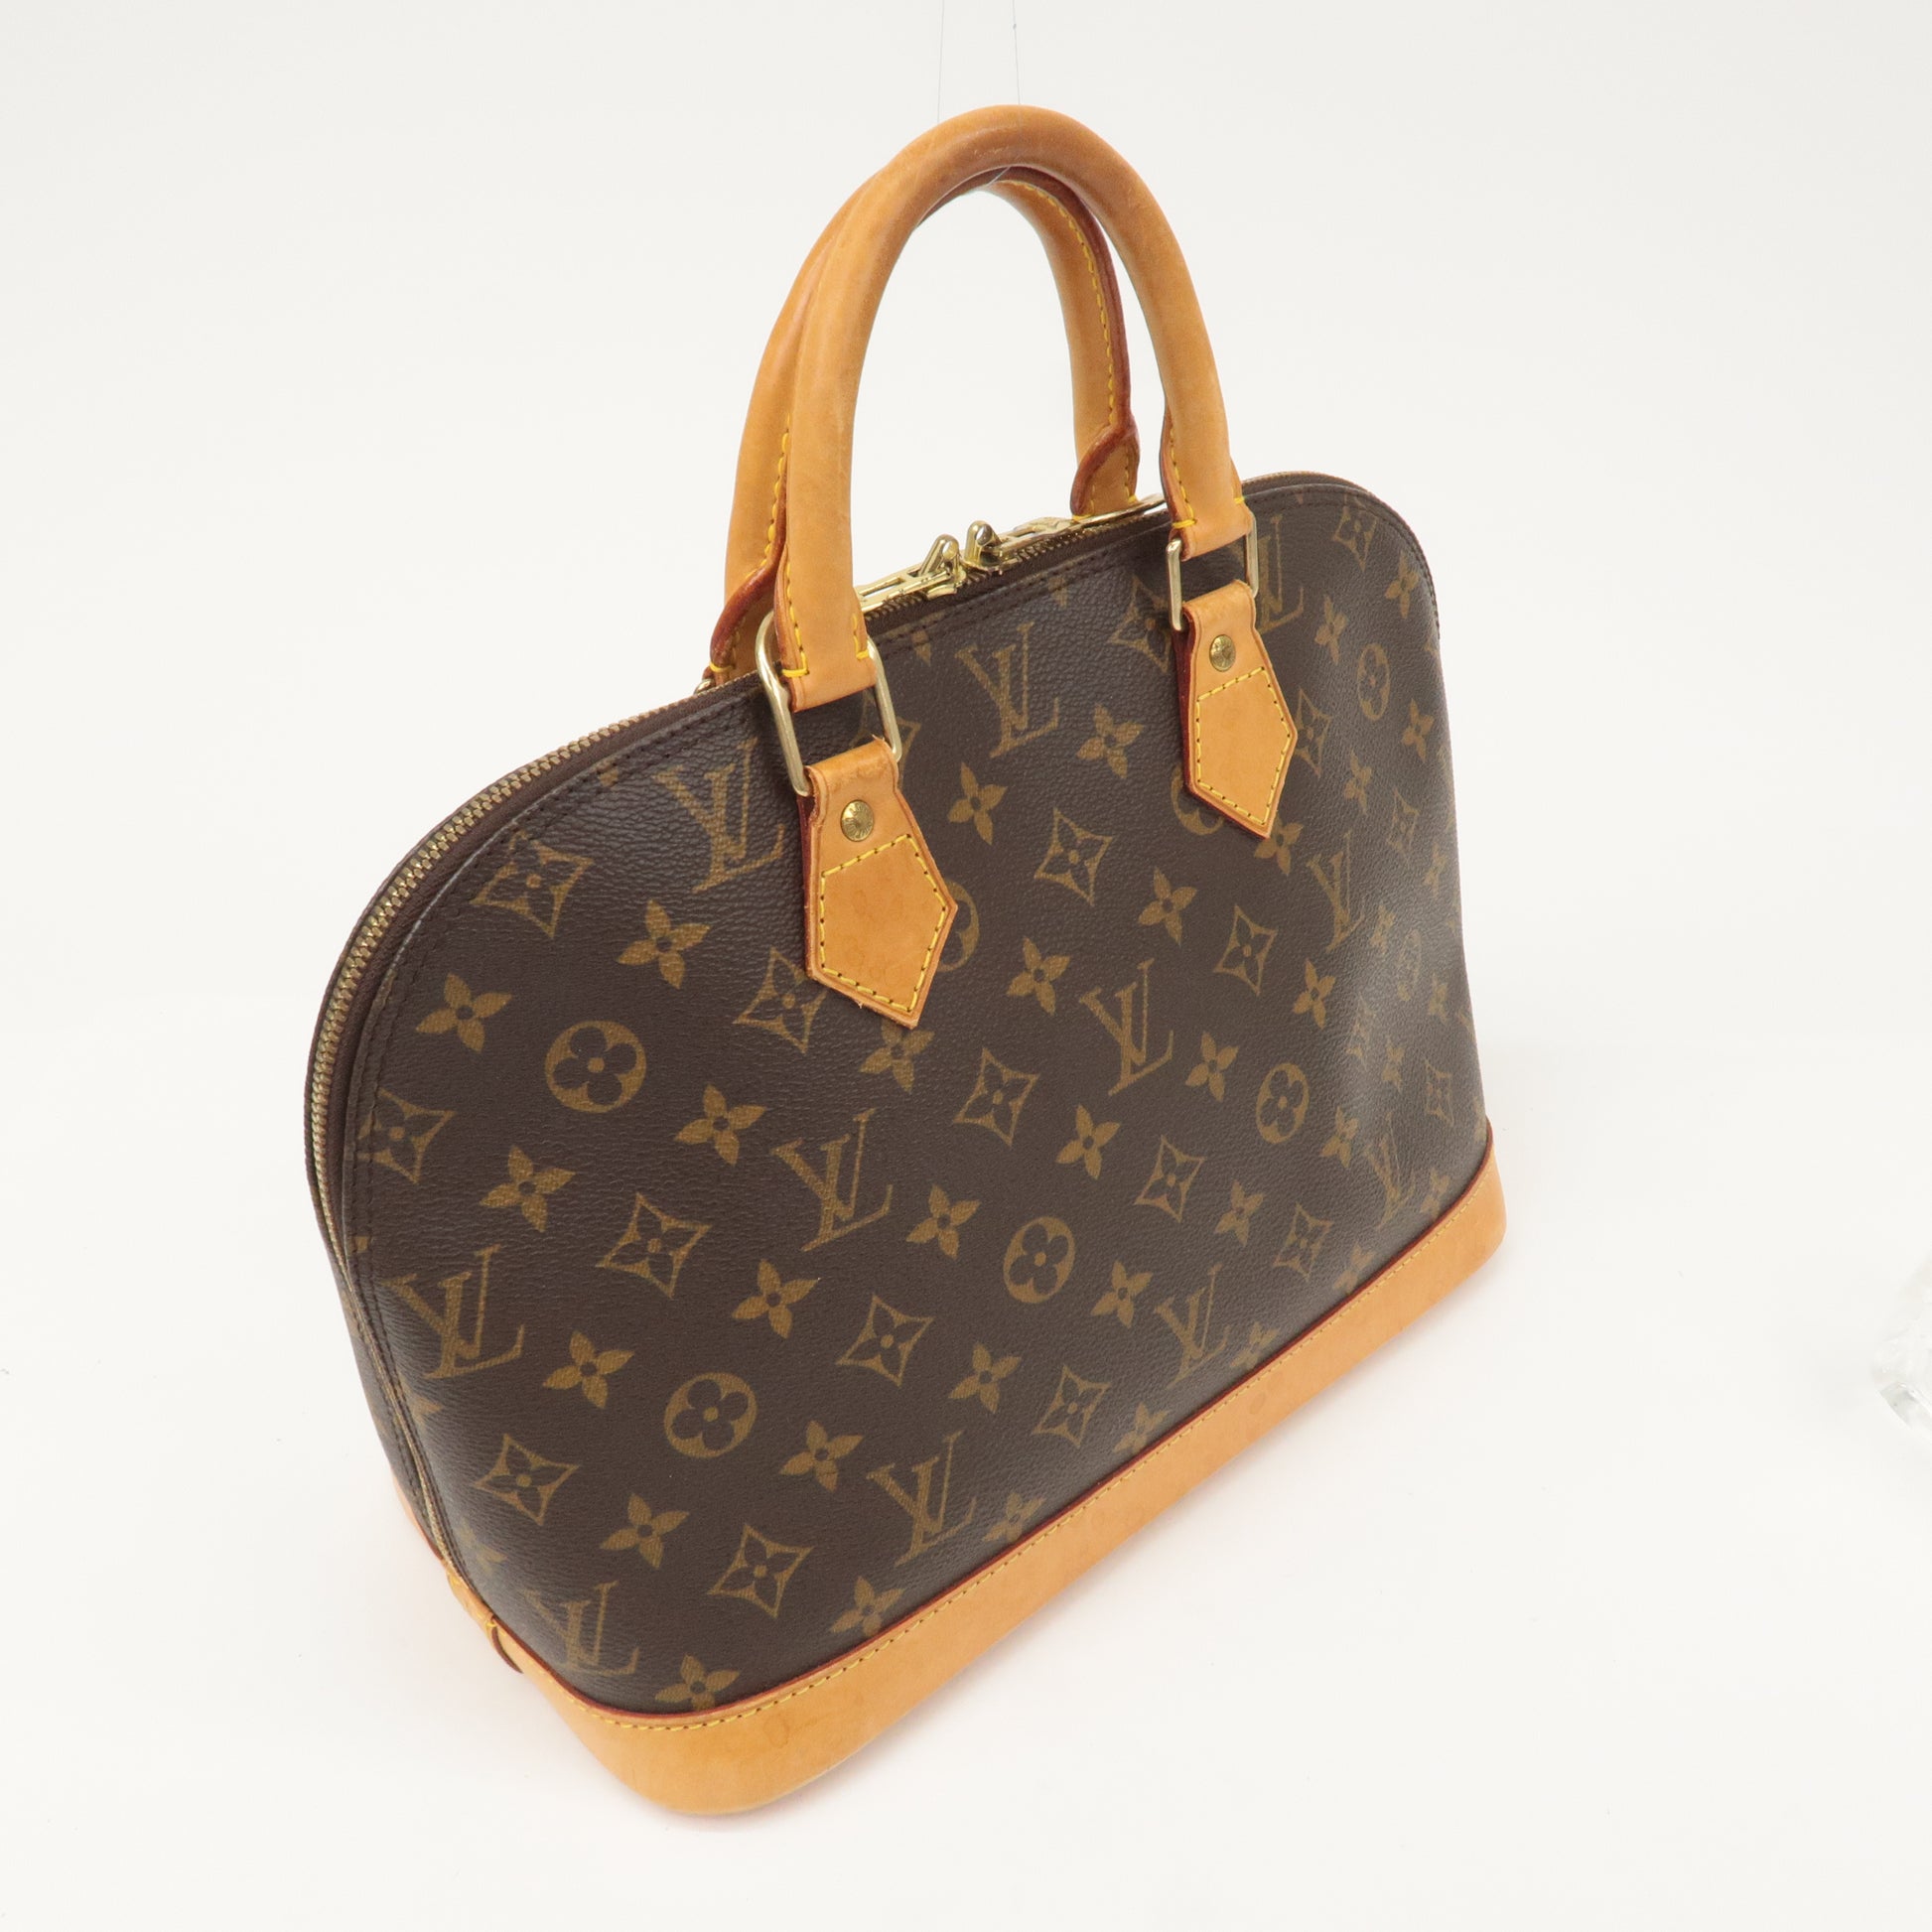 Louis Vuitton M51130 Alma $201.00  Bolsos louis vuitton, Bolso de